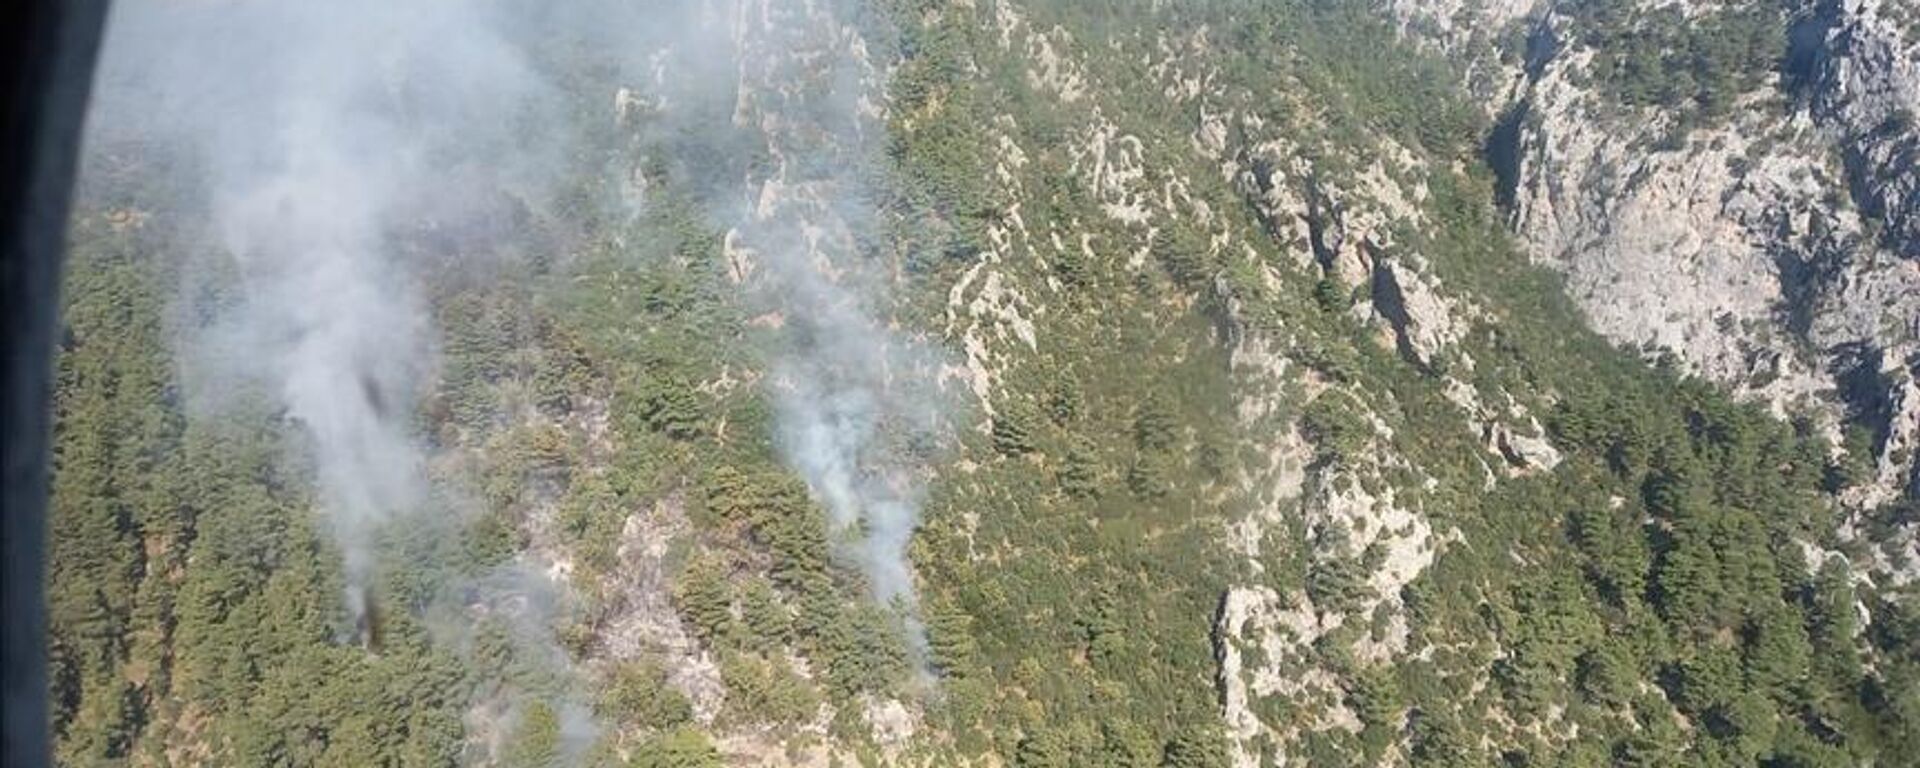 Antalya’da bir grup Rus turist, kasıtsız orman yangını çıkarma şüphesiyle gözaltına alındı - Sputnik Türkiye, 1920, 25.10.2021